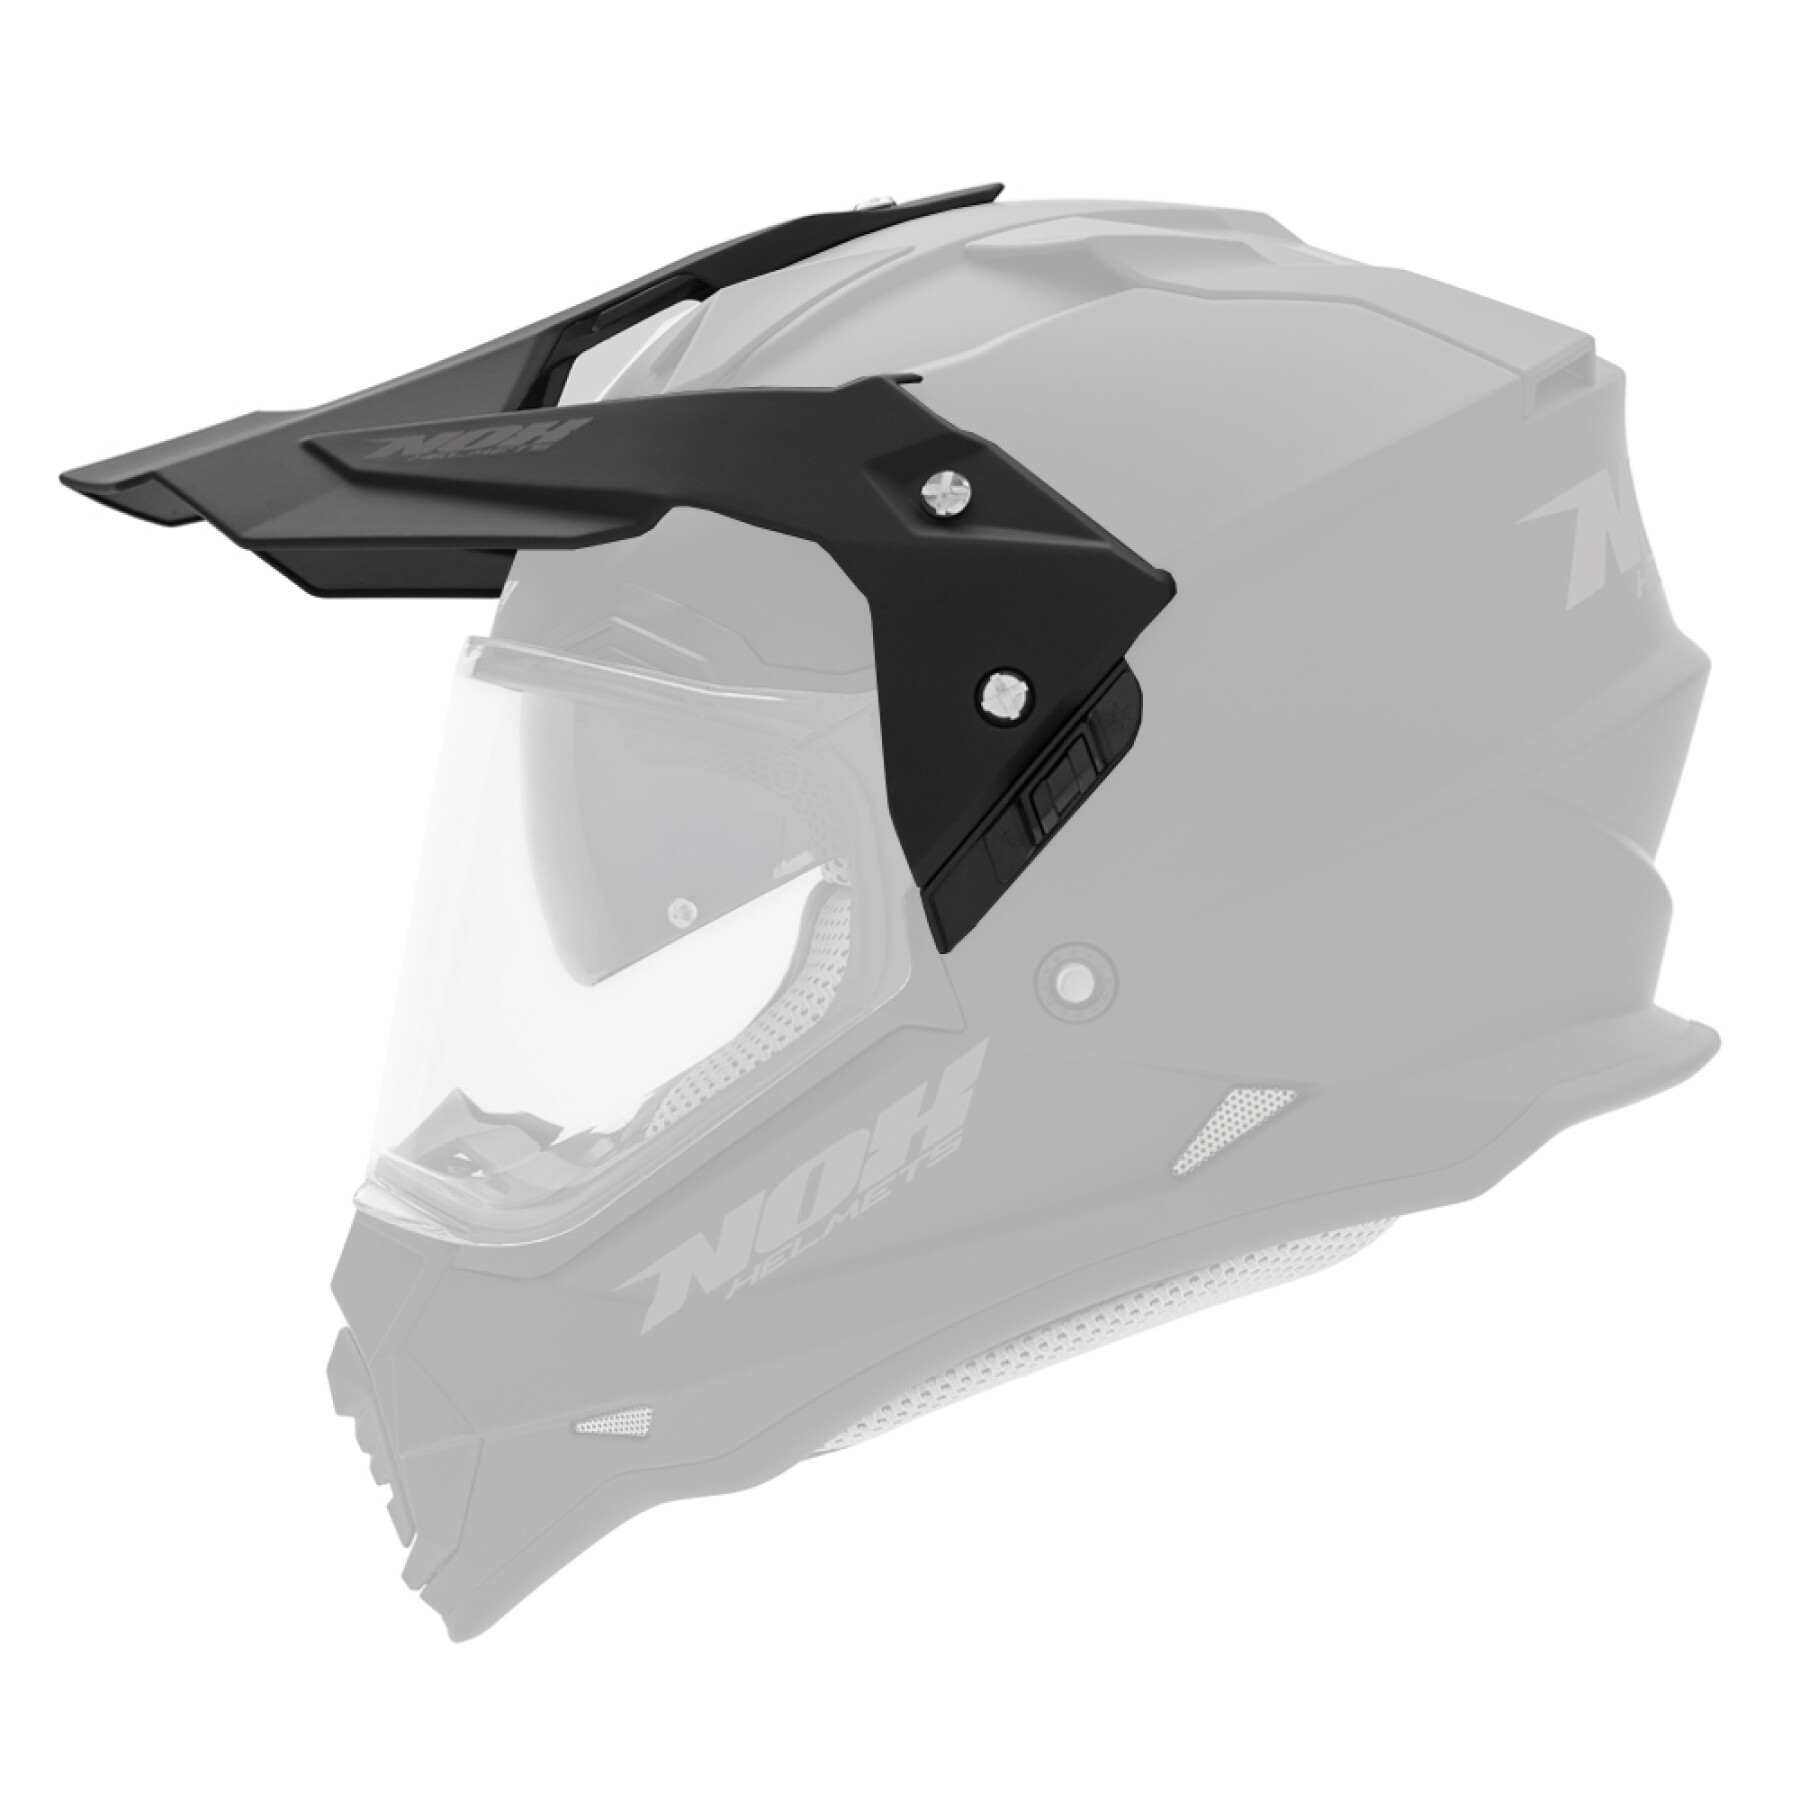 Motorcycle helmet visor Nox 312